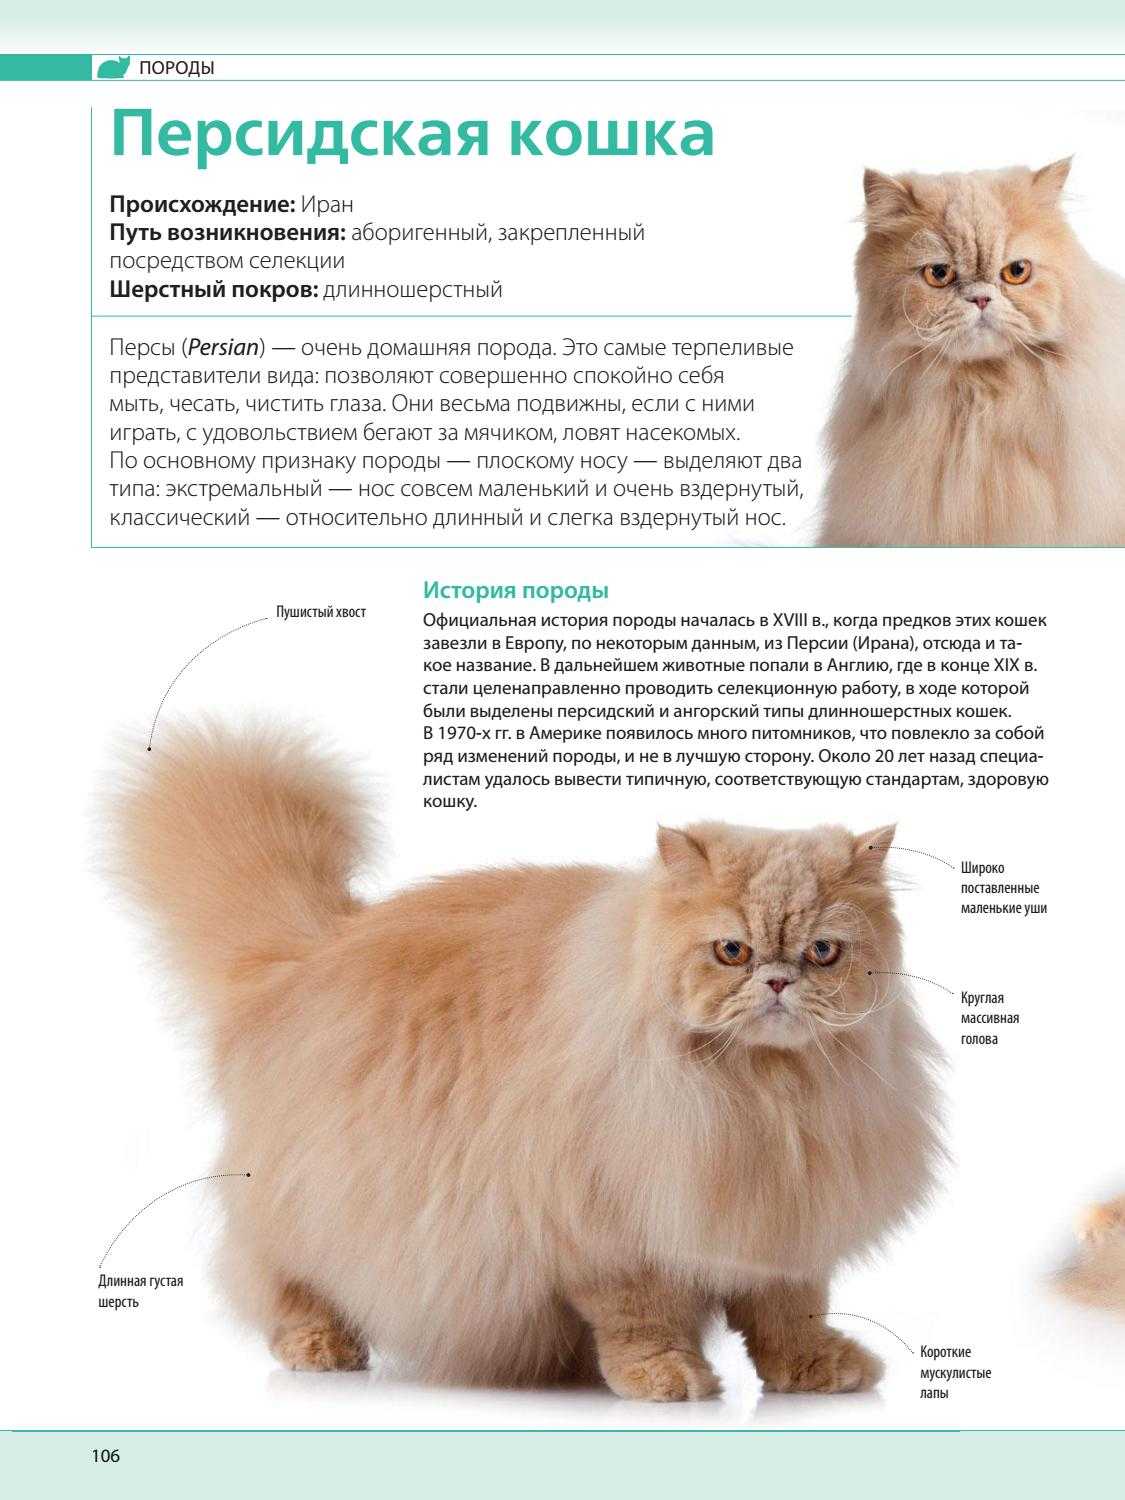 Царственная роскошь: длинношёрстные породы кошек